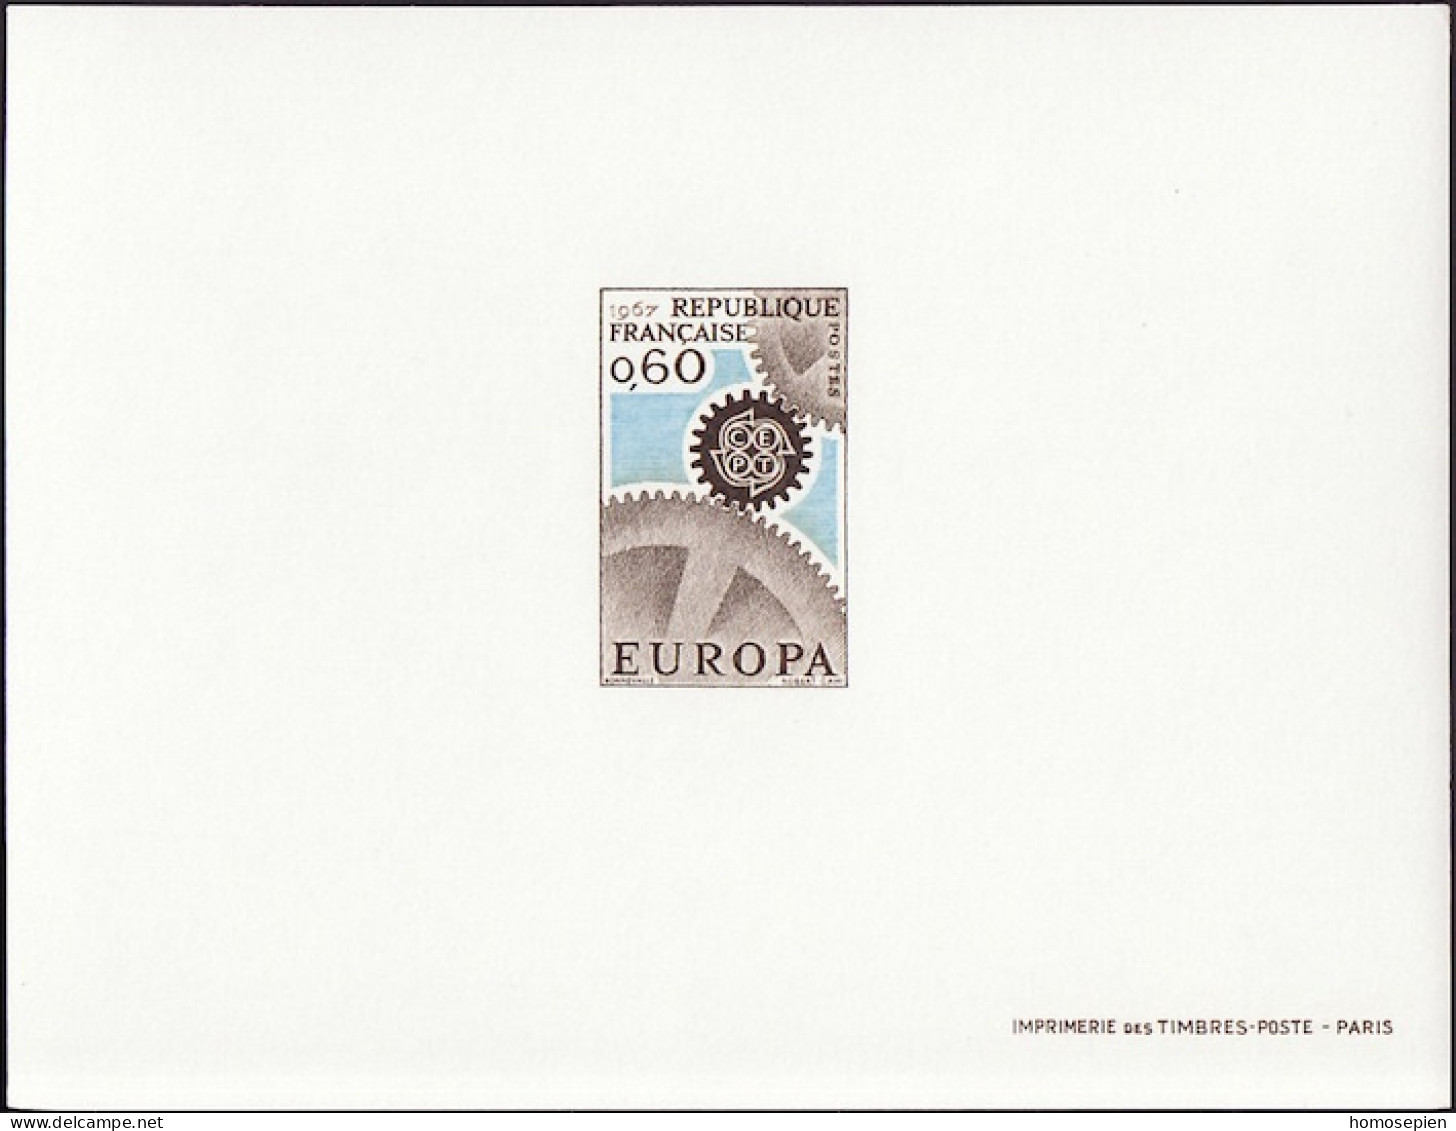 Europa CEPT 1967 France - Frankreich Y&T N°EL1522 - Michel N°DP1579 *** - 60c EUROPA - 1967